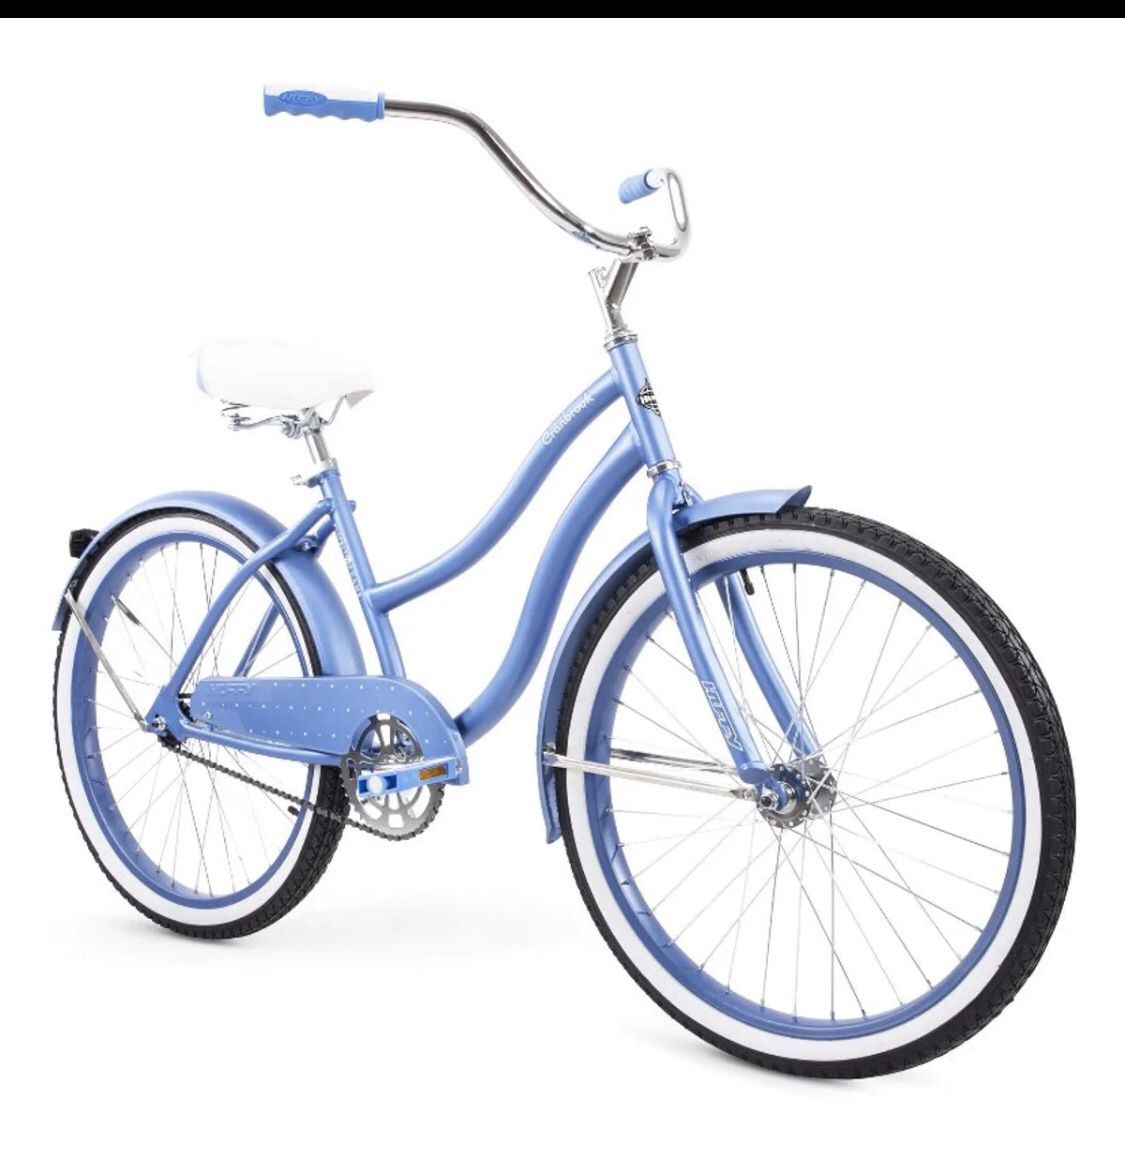 HUFFY 24” GIRL'S CRANBROOK CRUISER BIKE CYCLE BLUE NEW IN BOX